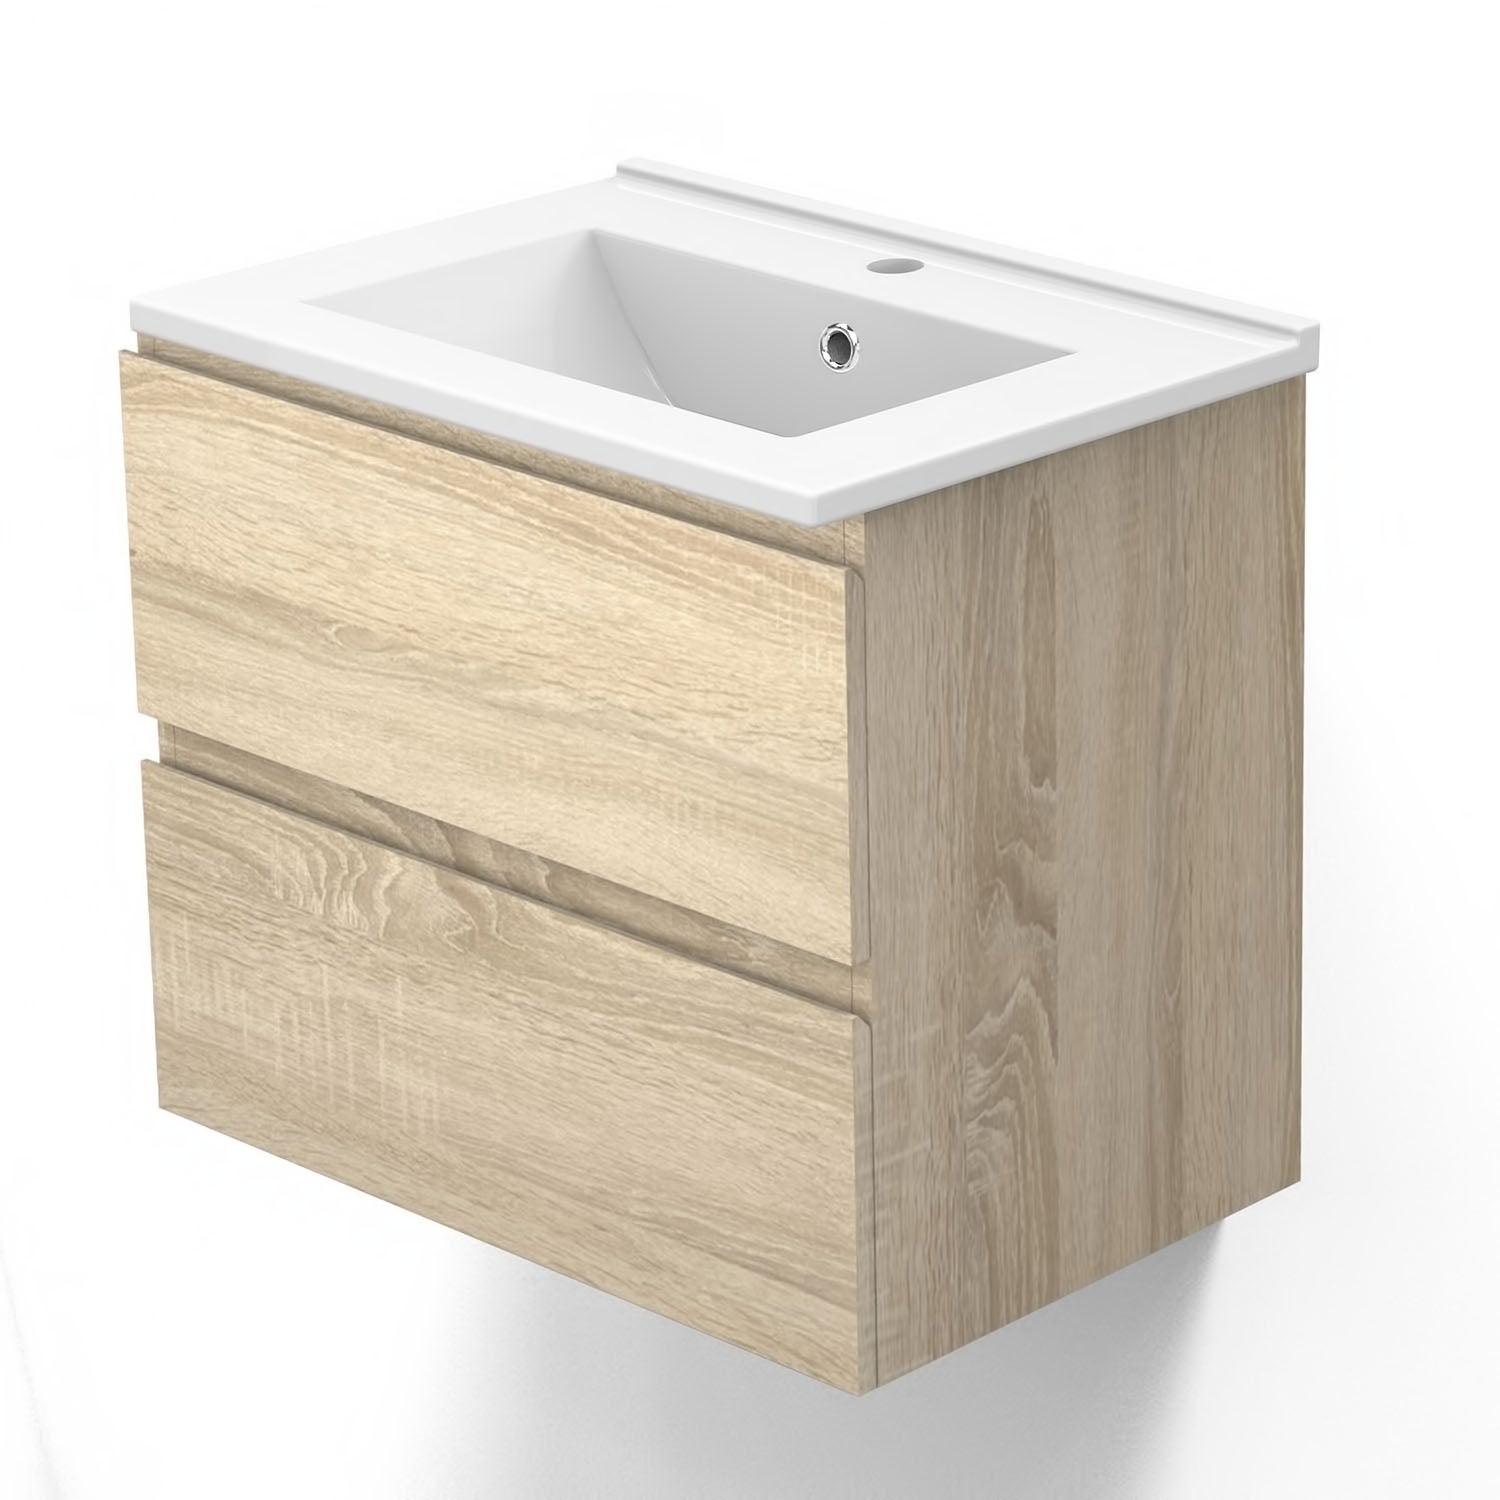 Meuble de salle de bain, Meuble de rangement avec lavabo, Meuble sous vasque suspendu, Blanc/Anthracite/Bois Clair, 60 cm -Livraison gratuite